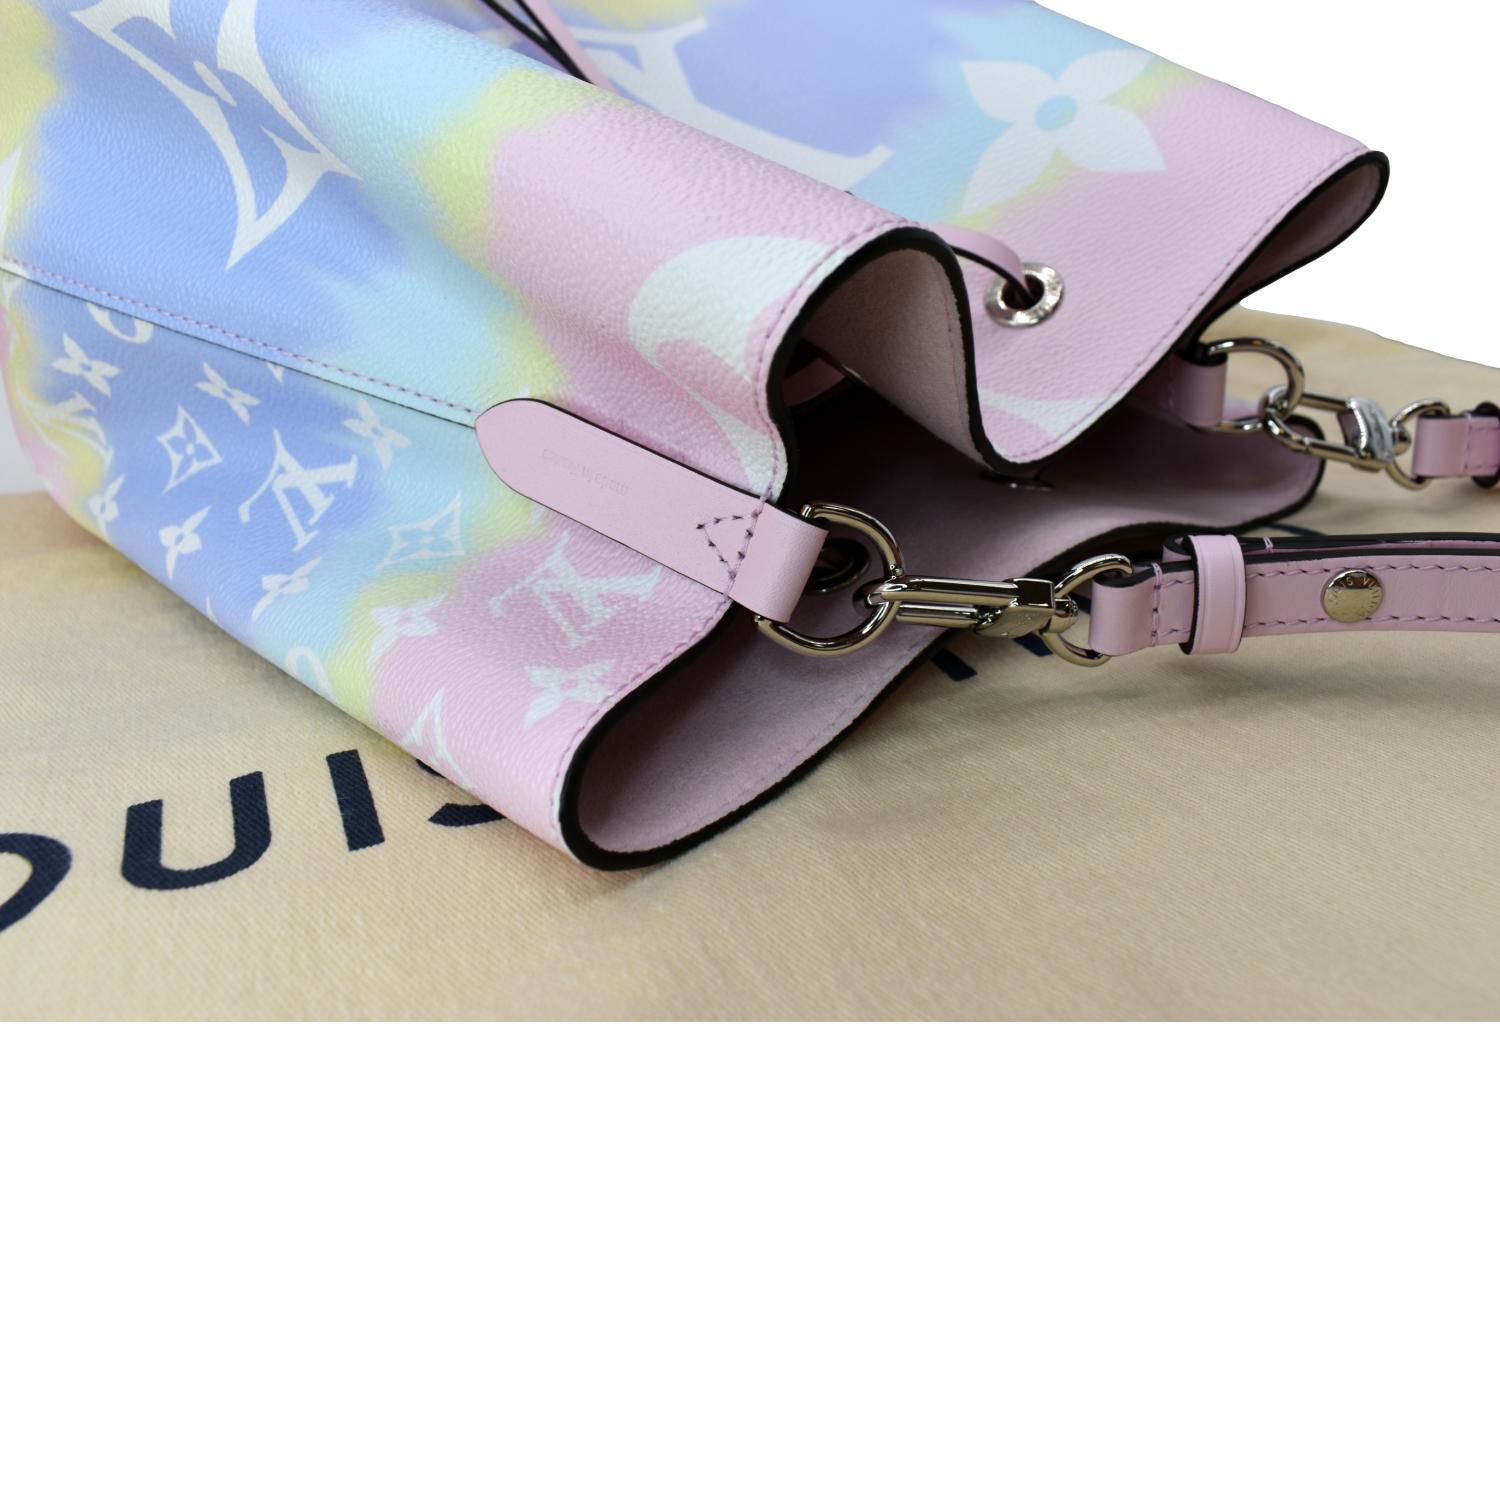 Louis Vuitton - Neverfull MM - Pastel Escale Monogram - Excellent Condition  - 2020